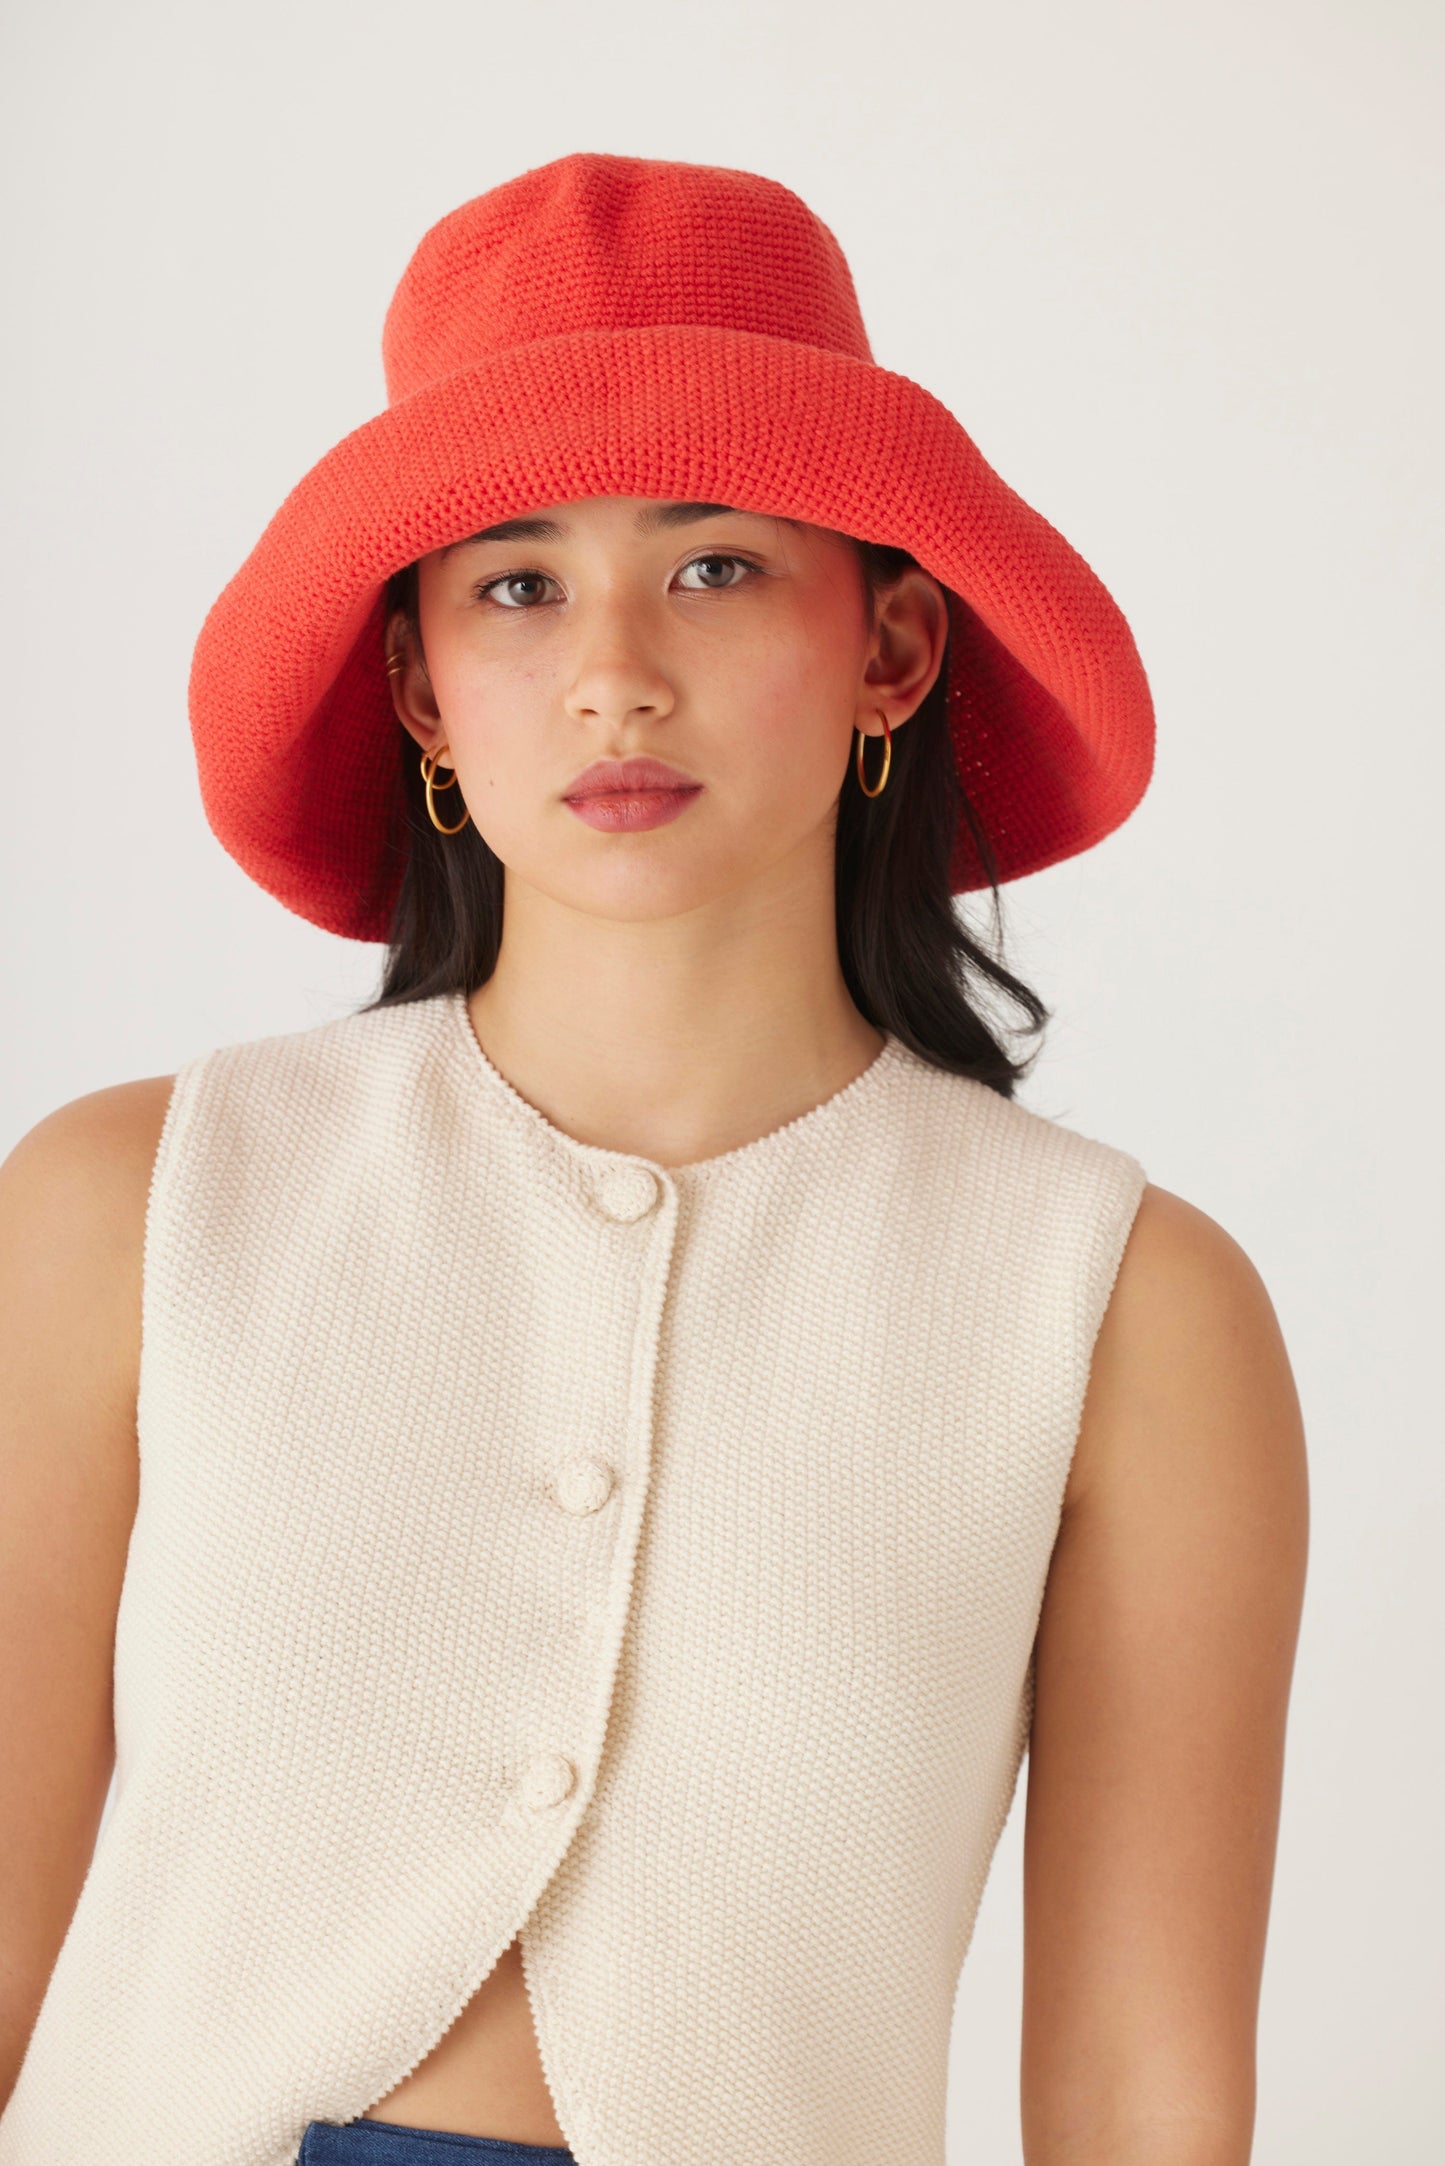 Crochet Sun Hat in Pima Cotton Accessories CHRISTINE ALCALAY   